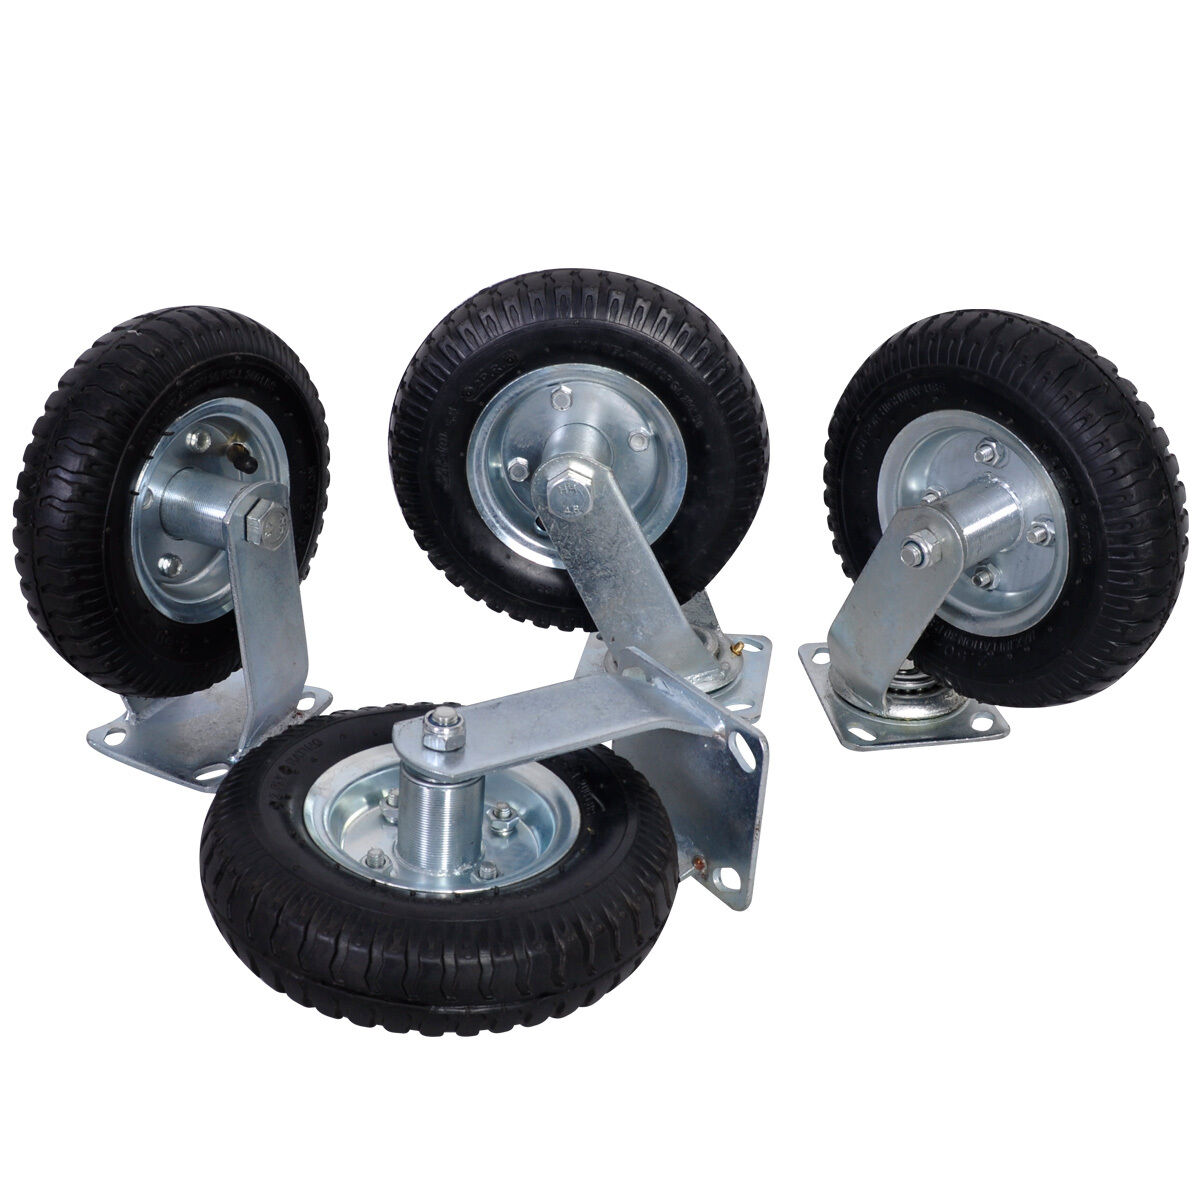 4pcs 8" Air Tire Caster Wheel 2 Rigid + 2 Swivel Wheel Farm Wheels Durable